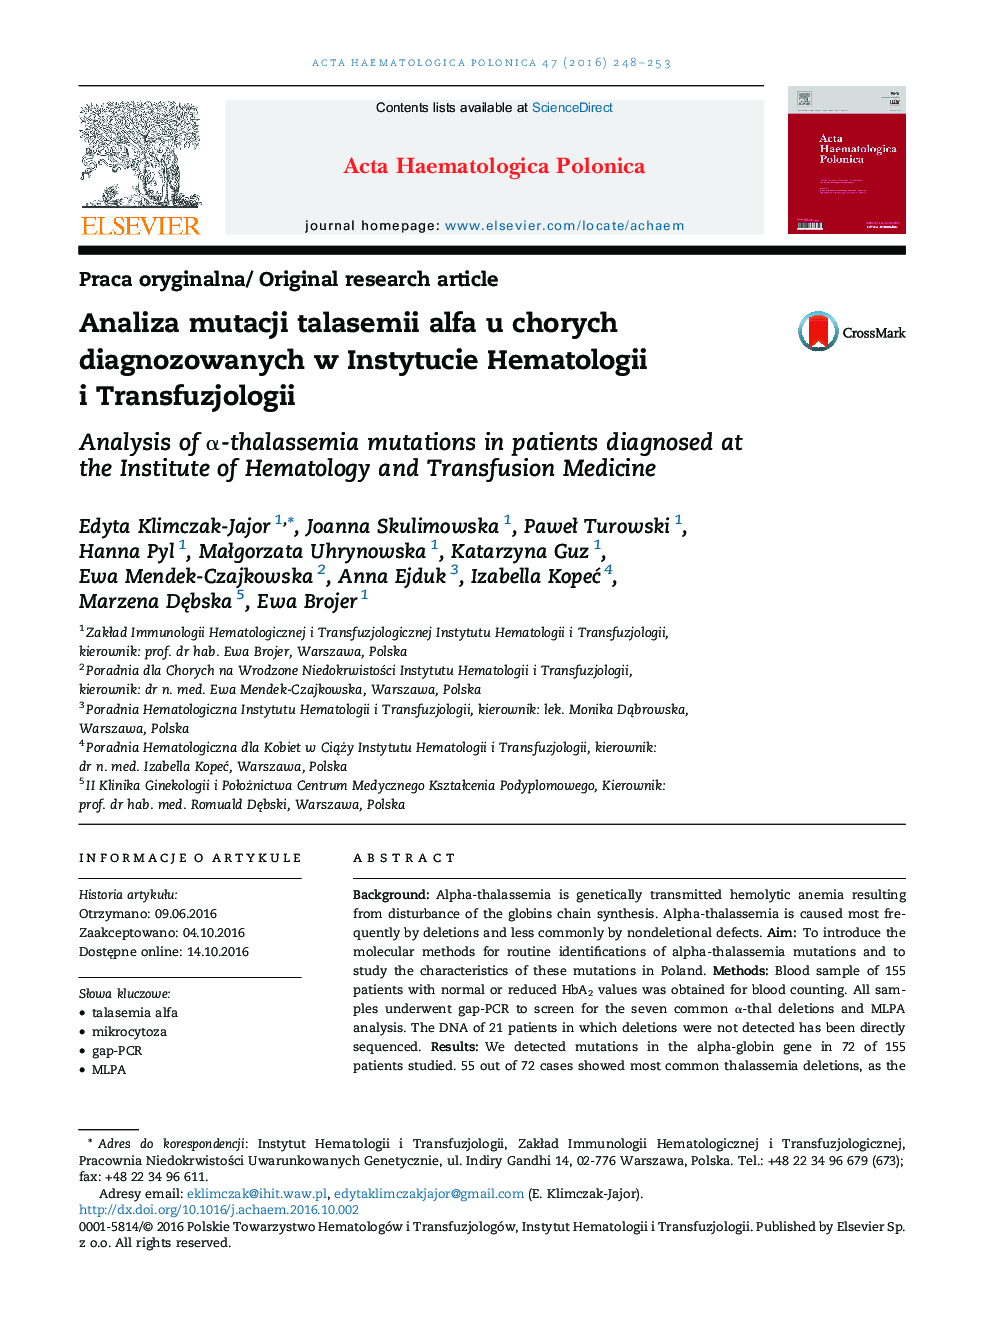 Analiza mutacji talasemii alfa u chorych diagnozowanych w Instytucie Hematologii i Transfuzjologii